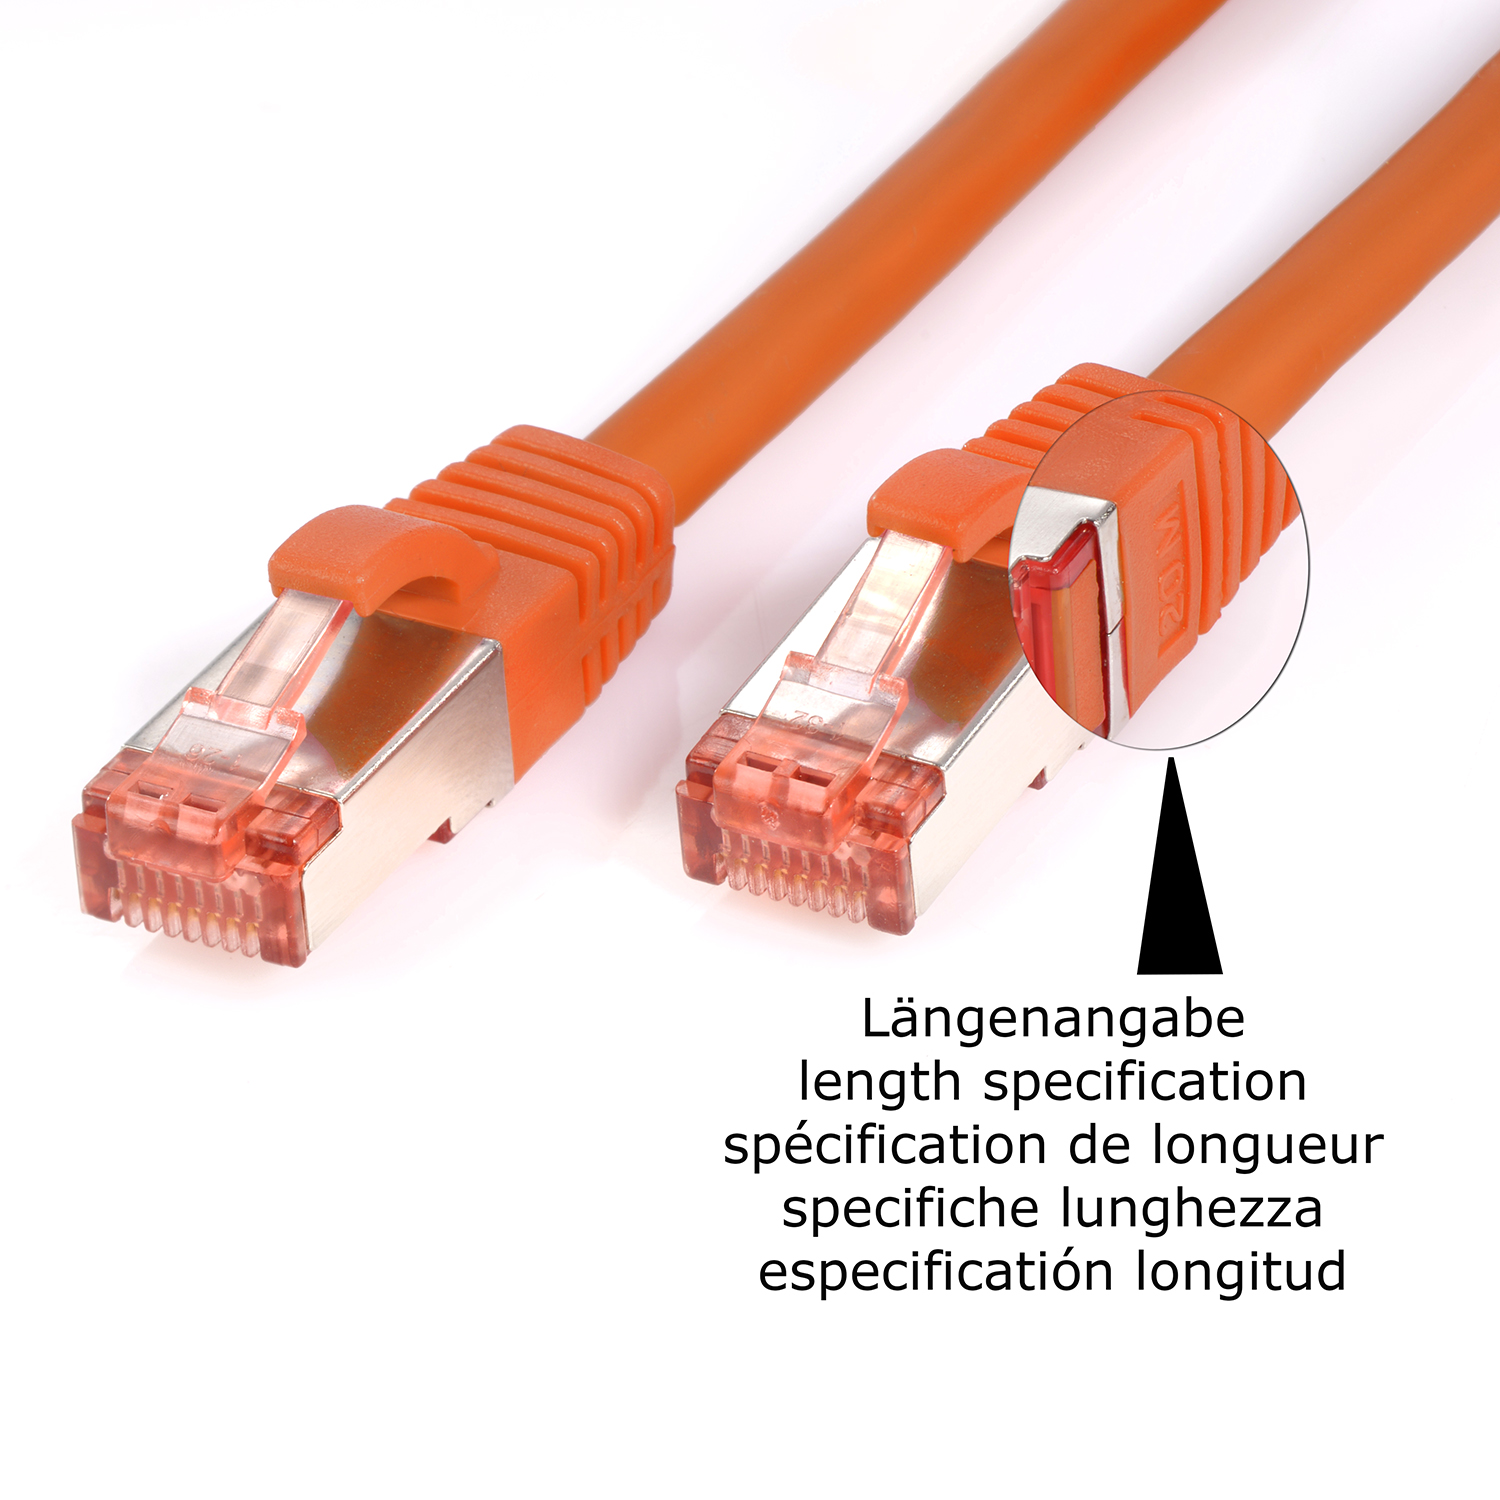 1,5 / Pack m Netzwerkkabel orange, 5er 1000Mbit, TPFNET Netzwerkkabel, 1,5m Patchkabel S/FTP